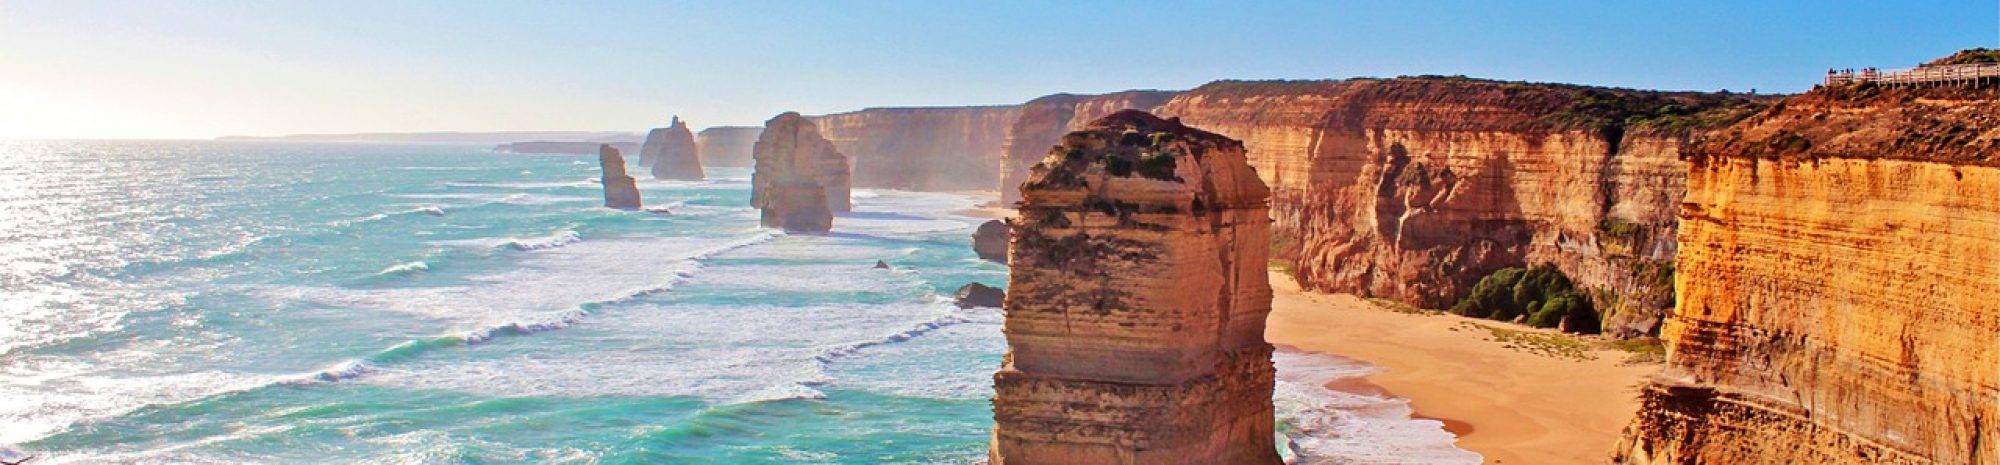 5 endroits romantiques pour une lune de miel d’aventure en Australie